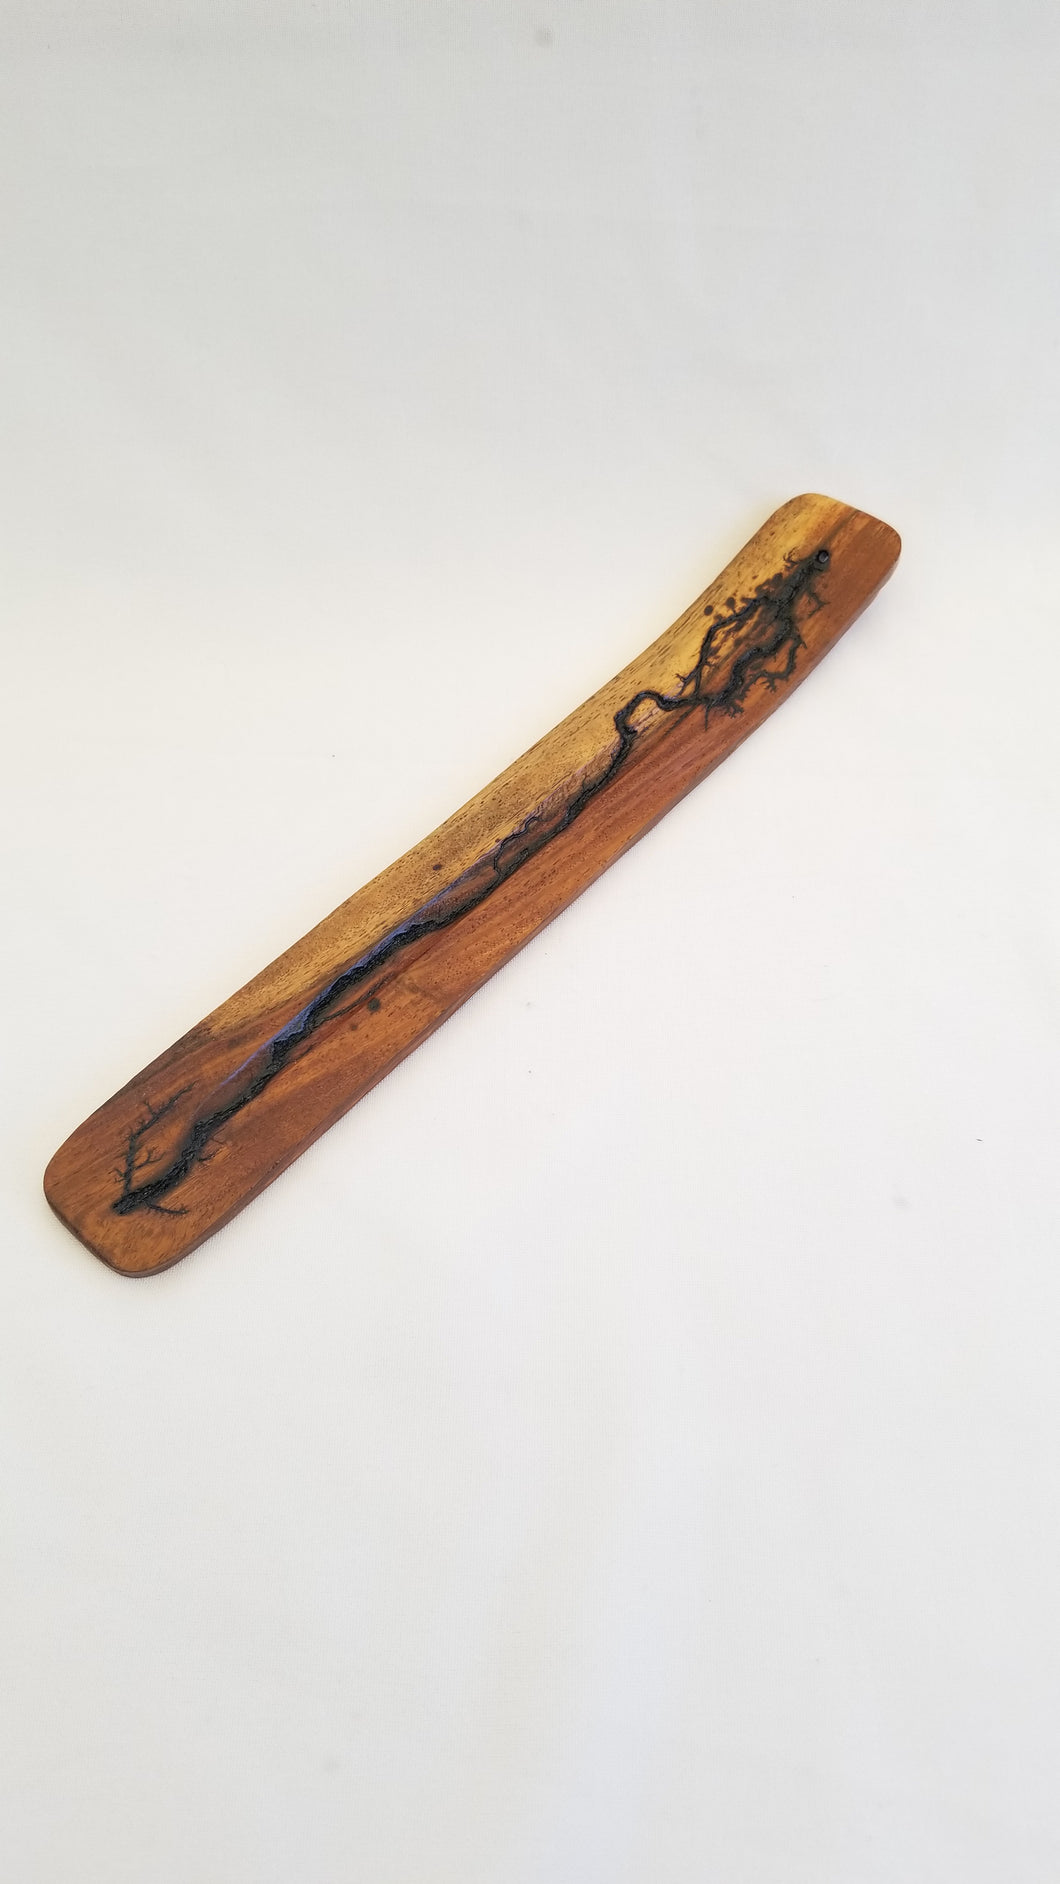 Lichtenberg burned stick incense burner- various colors/finishes